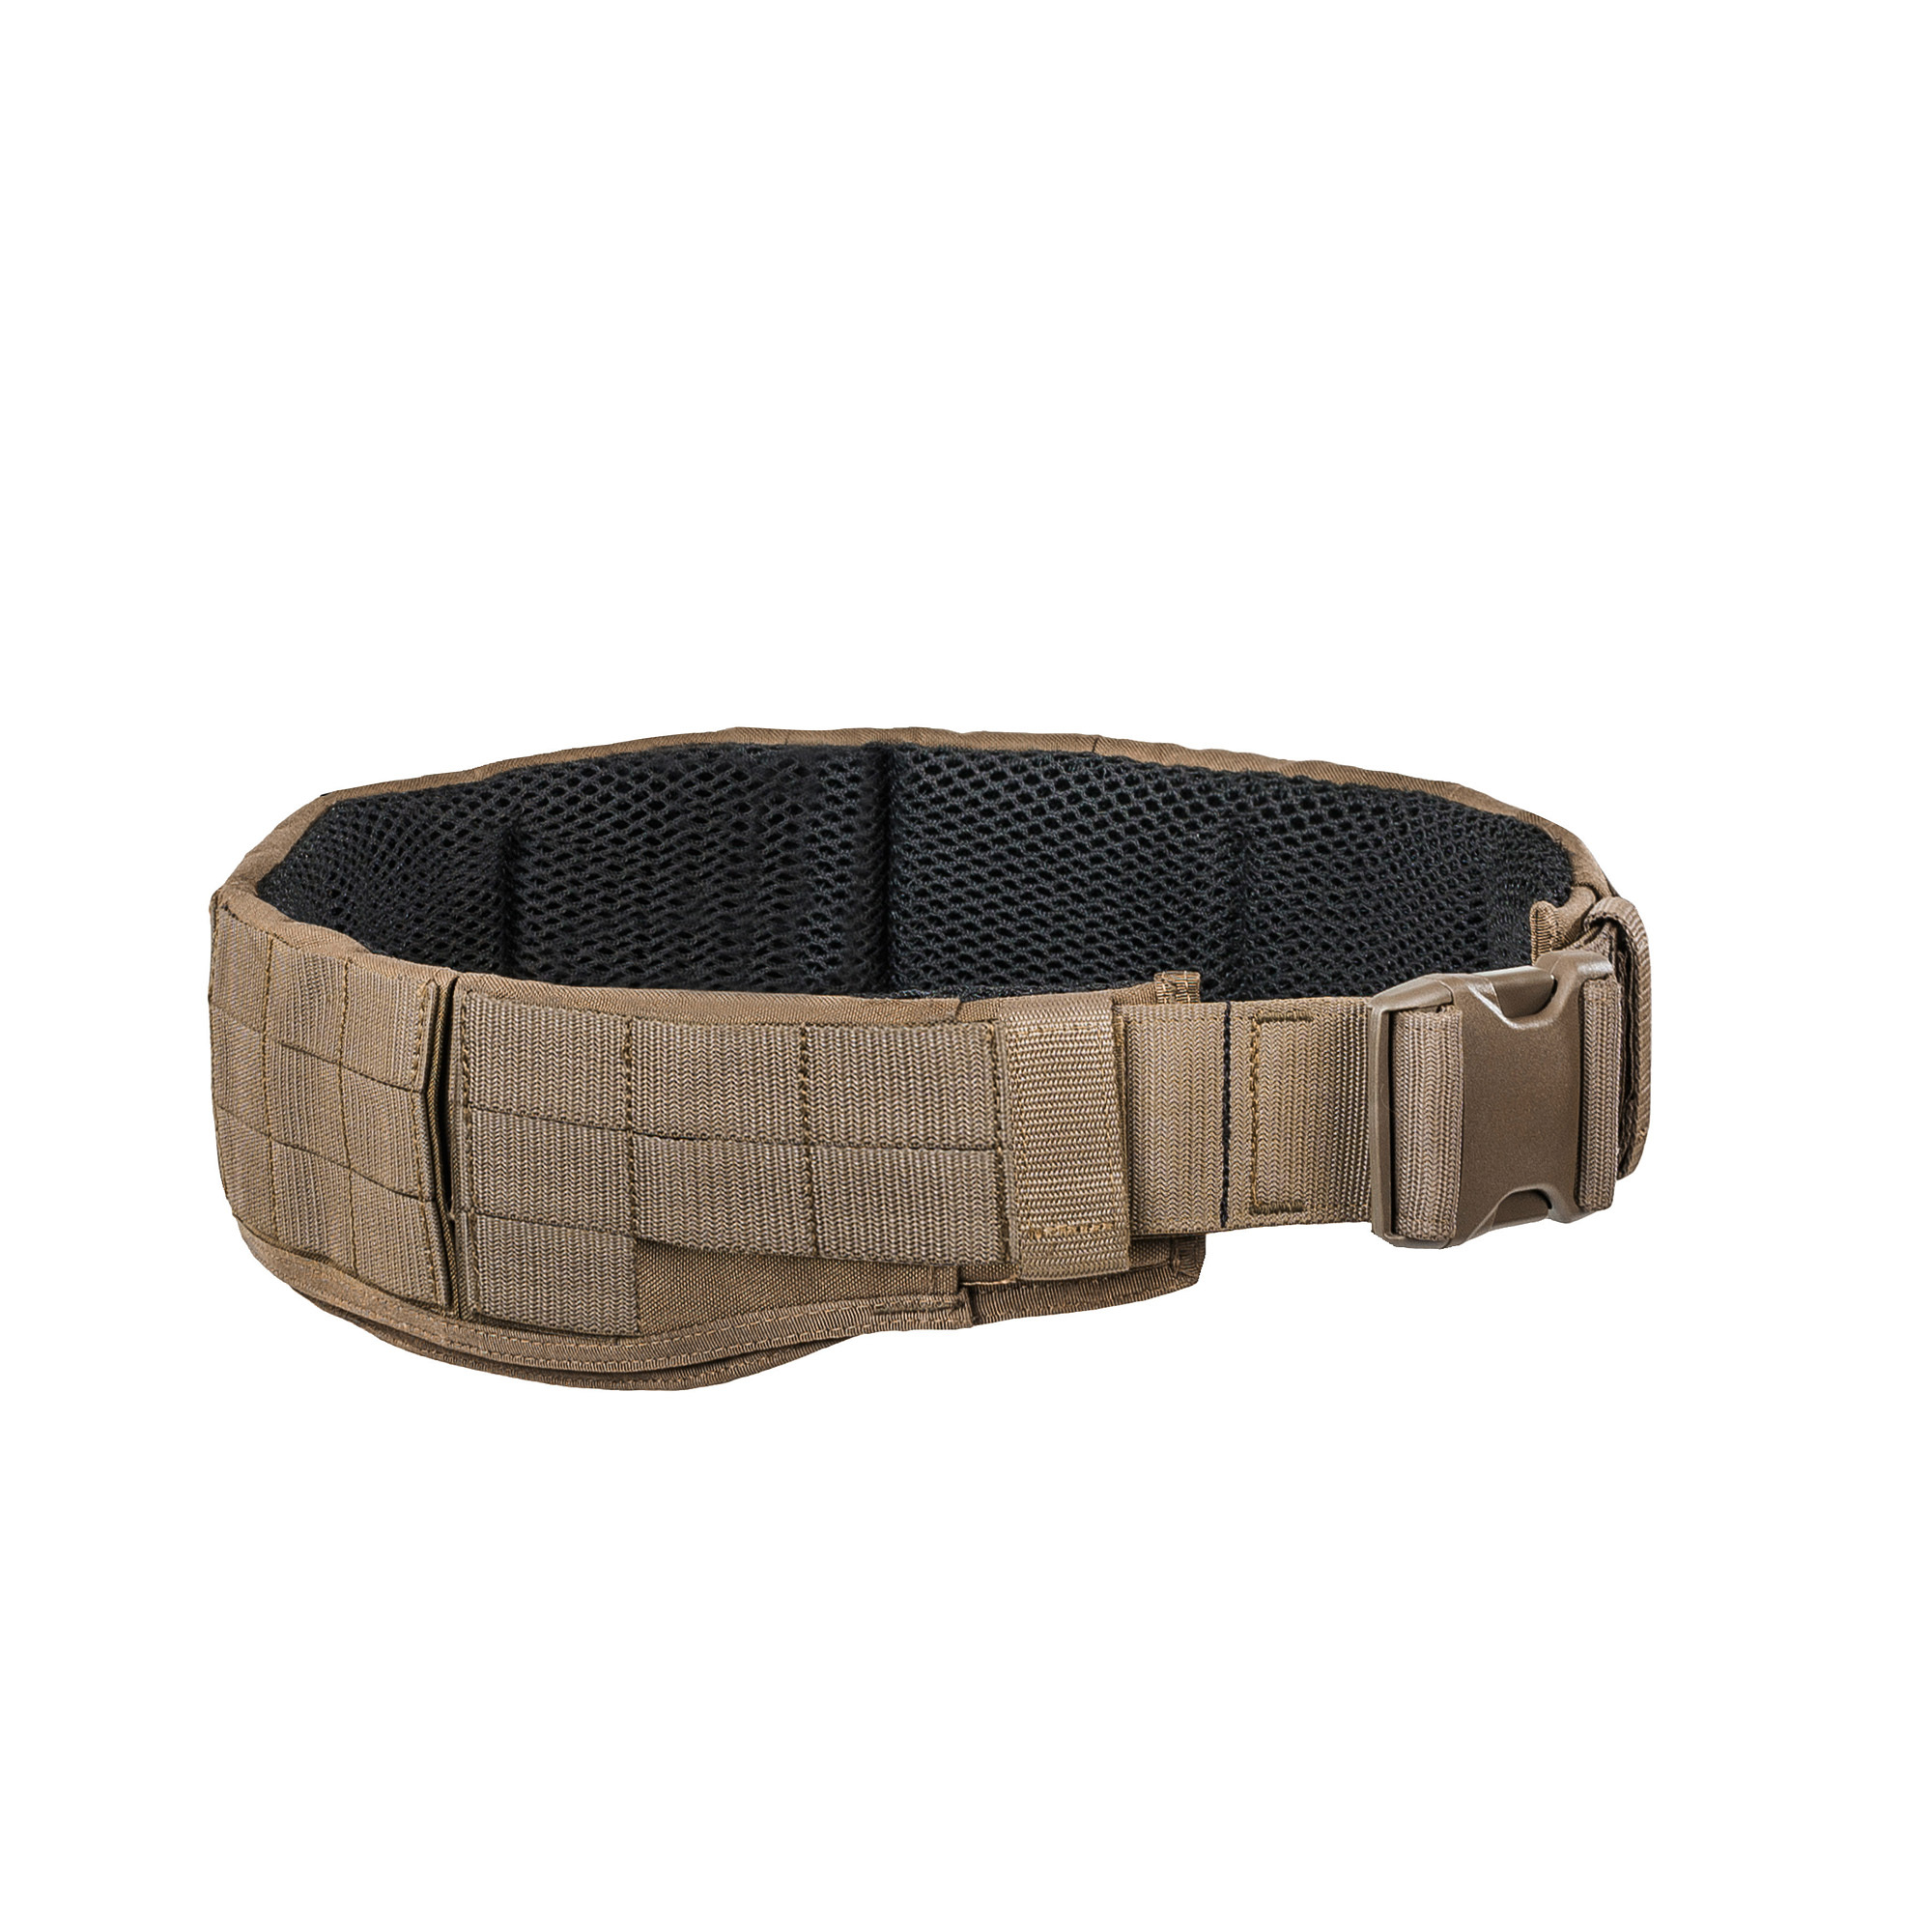 TT Warrior Belt MK IV - Gear belt